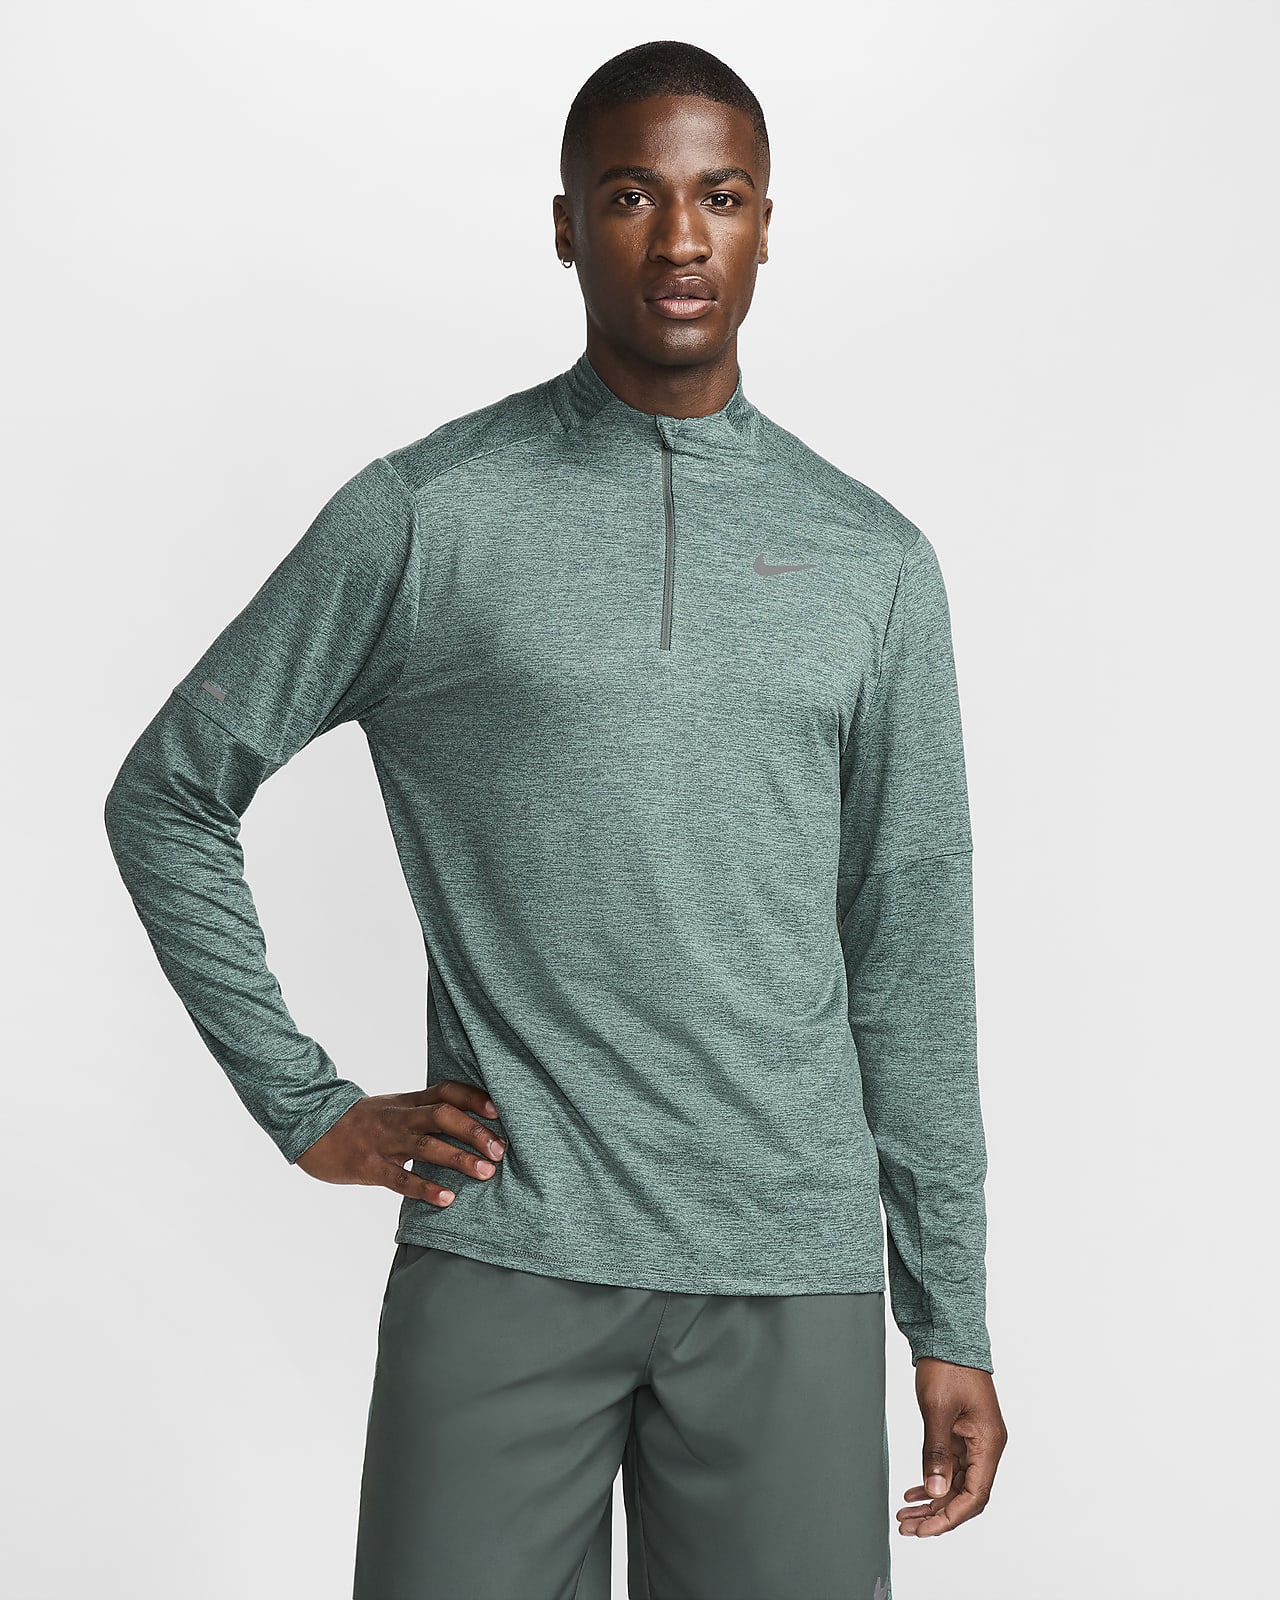 Pánské běžecké tričko Dri-FIT Nike Element do terénu s polovičním zipem